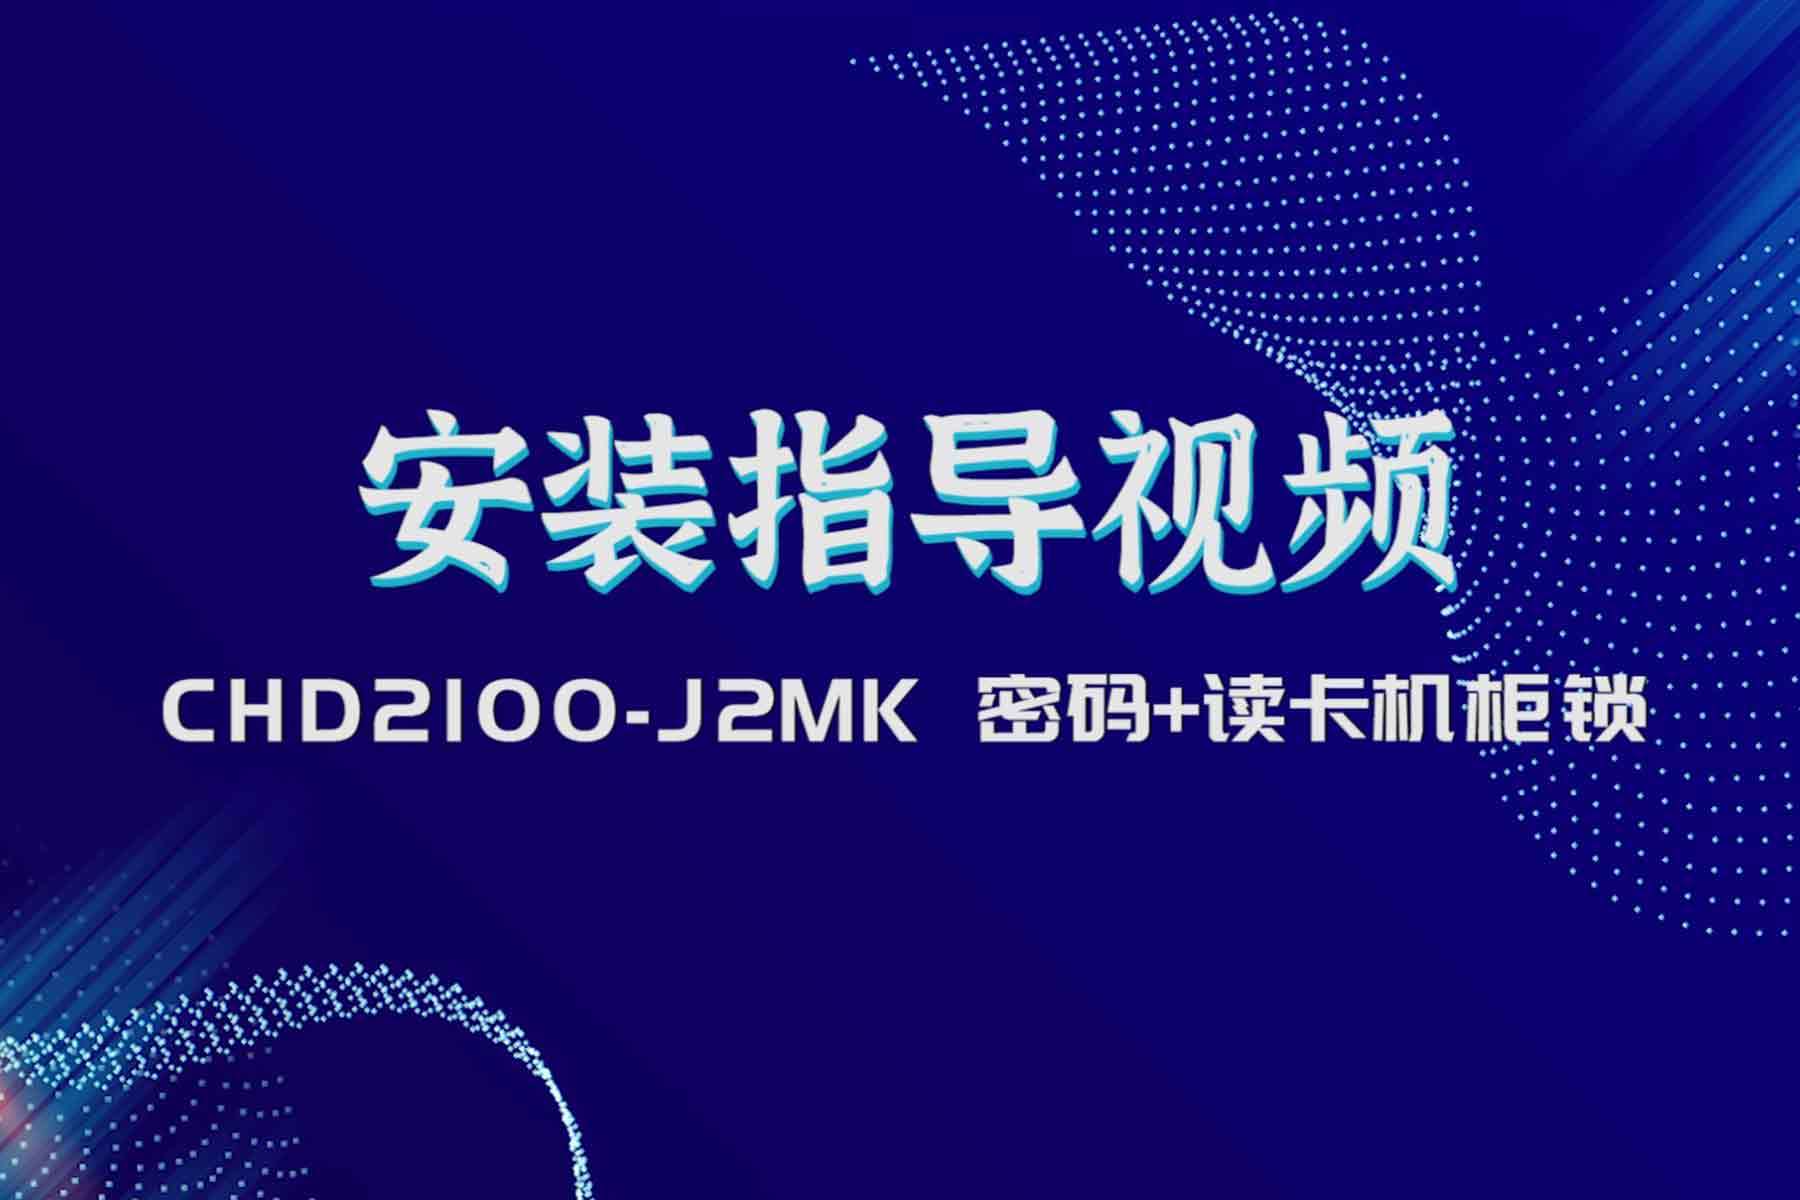 2100-J2MK安裝指導視頻